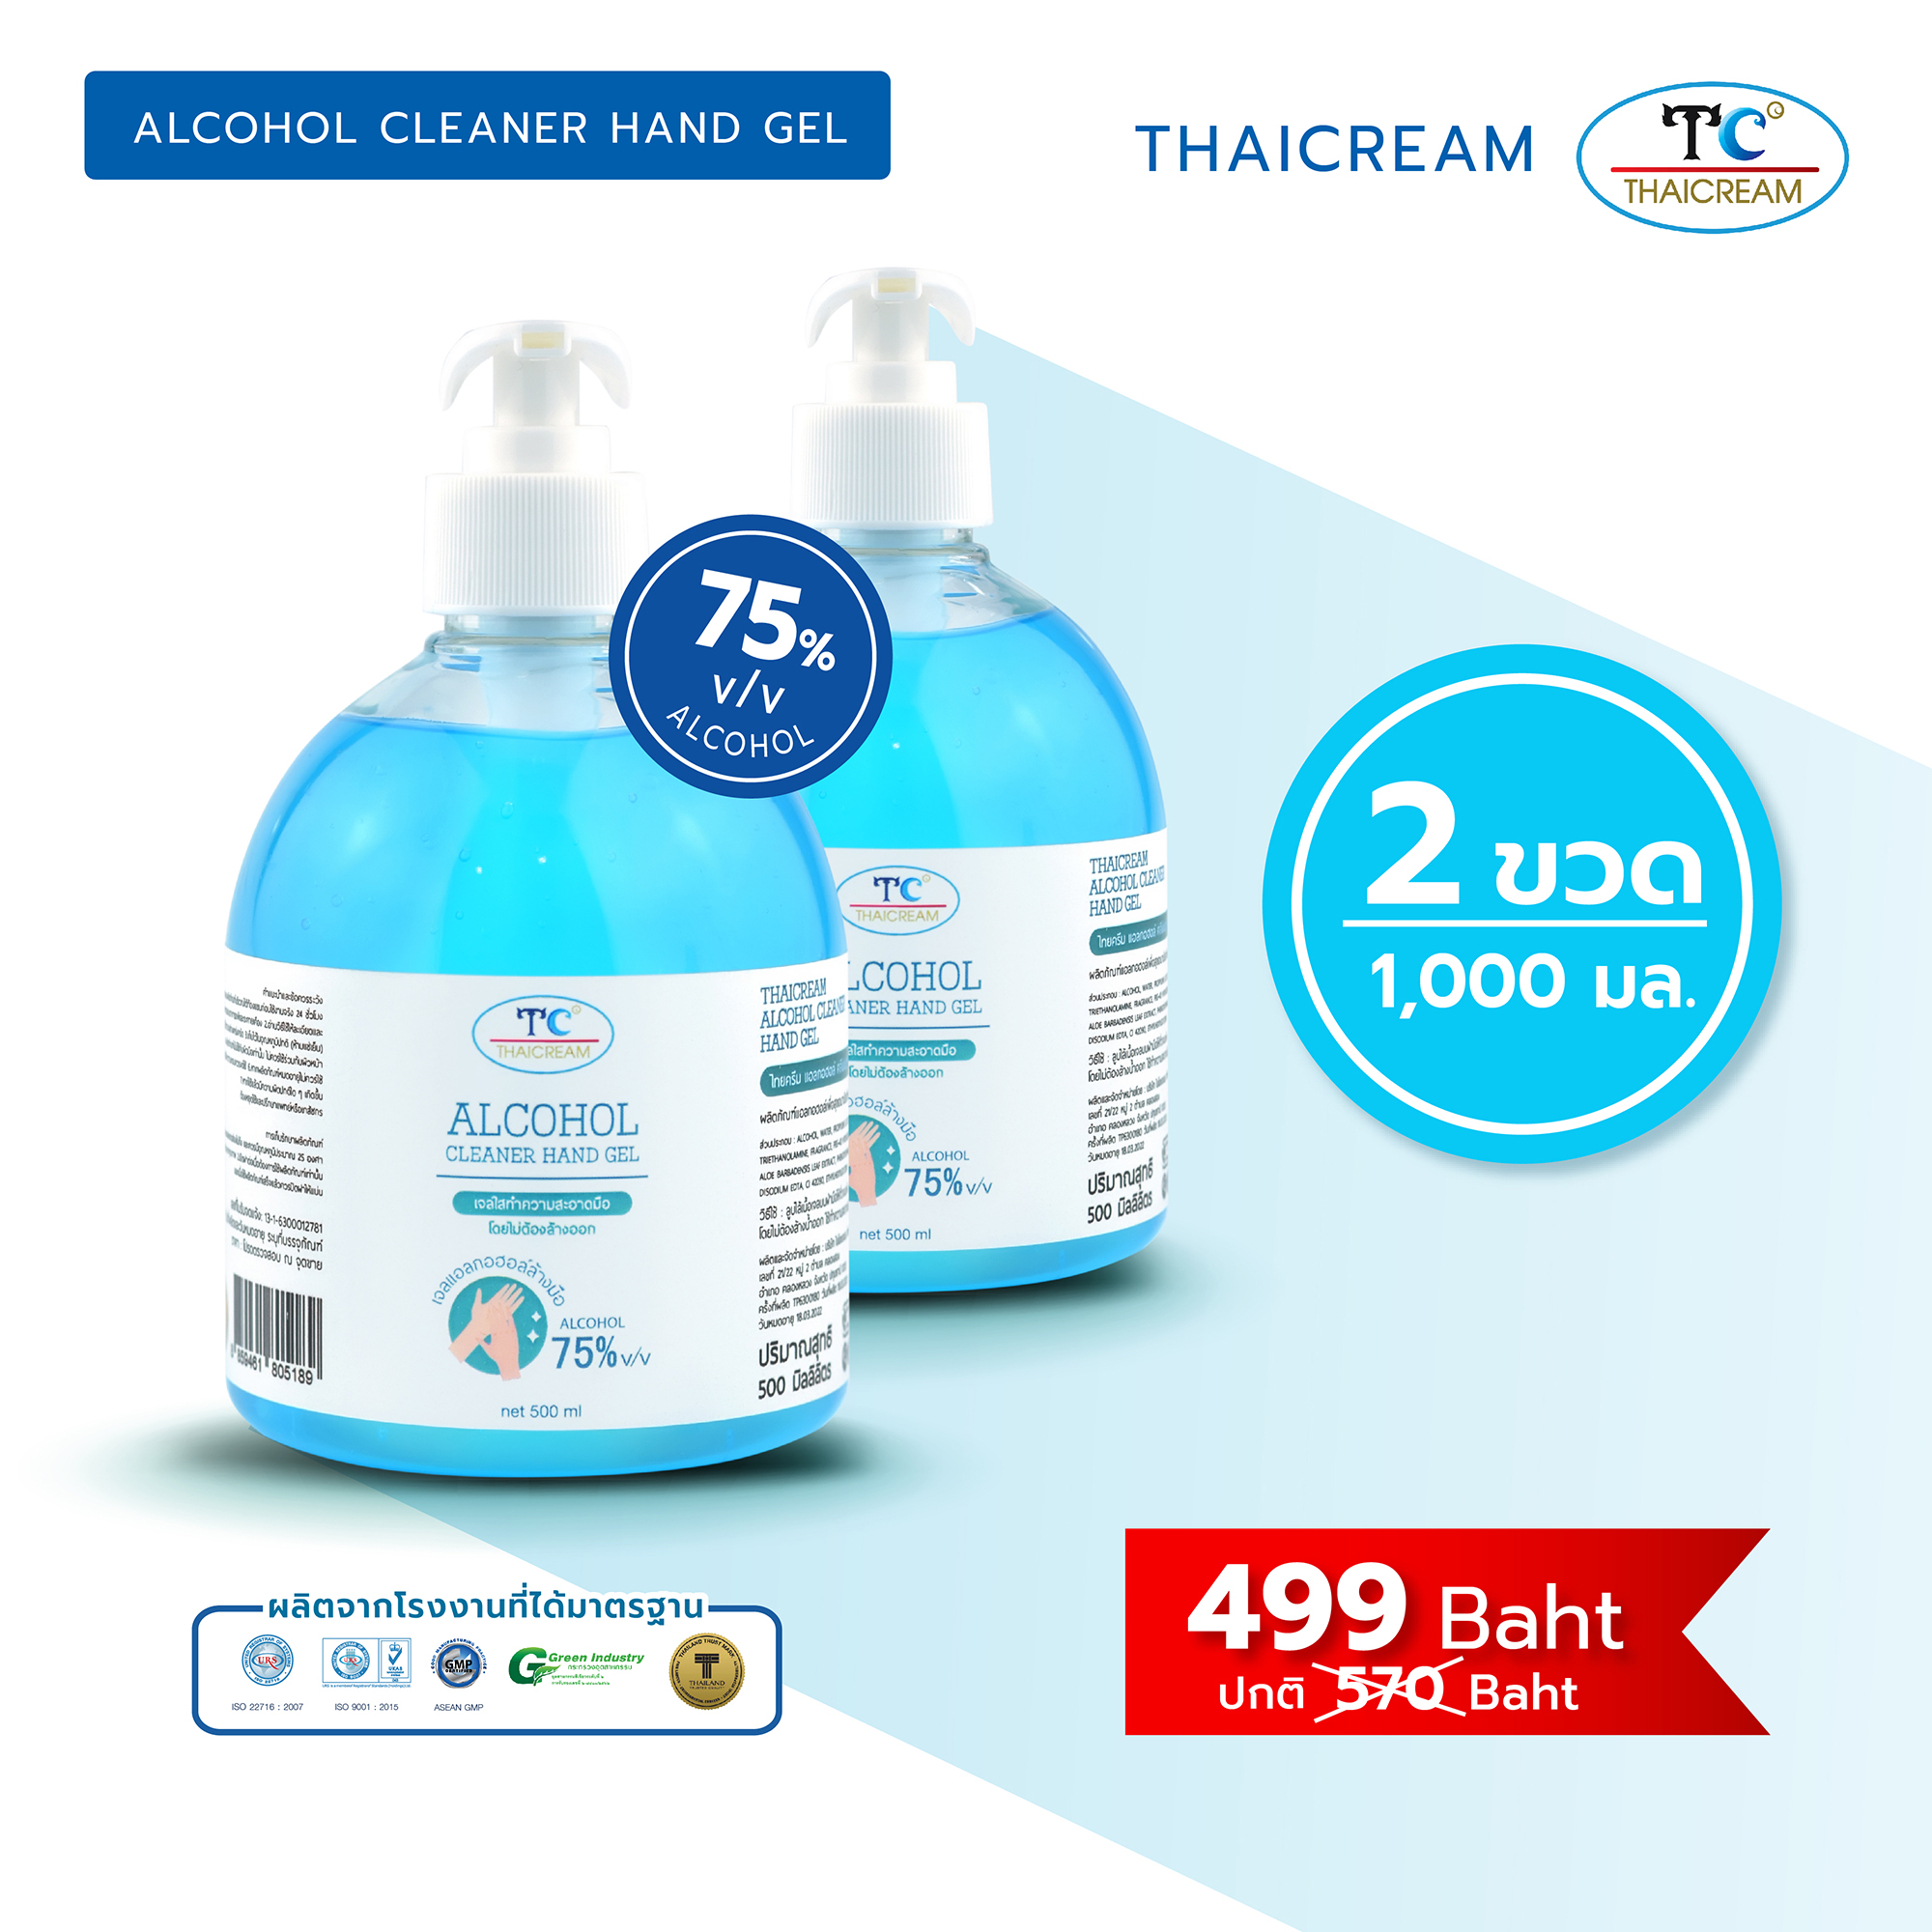 (2ขวด) THAICREAM ไทยครีม - เจลแอลกอฮอล์ล้างมือ แอลกอฮอล์ 75% Hand Sanitizer Gel 500 ml